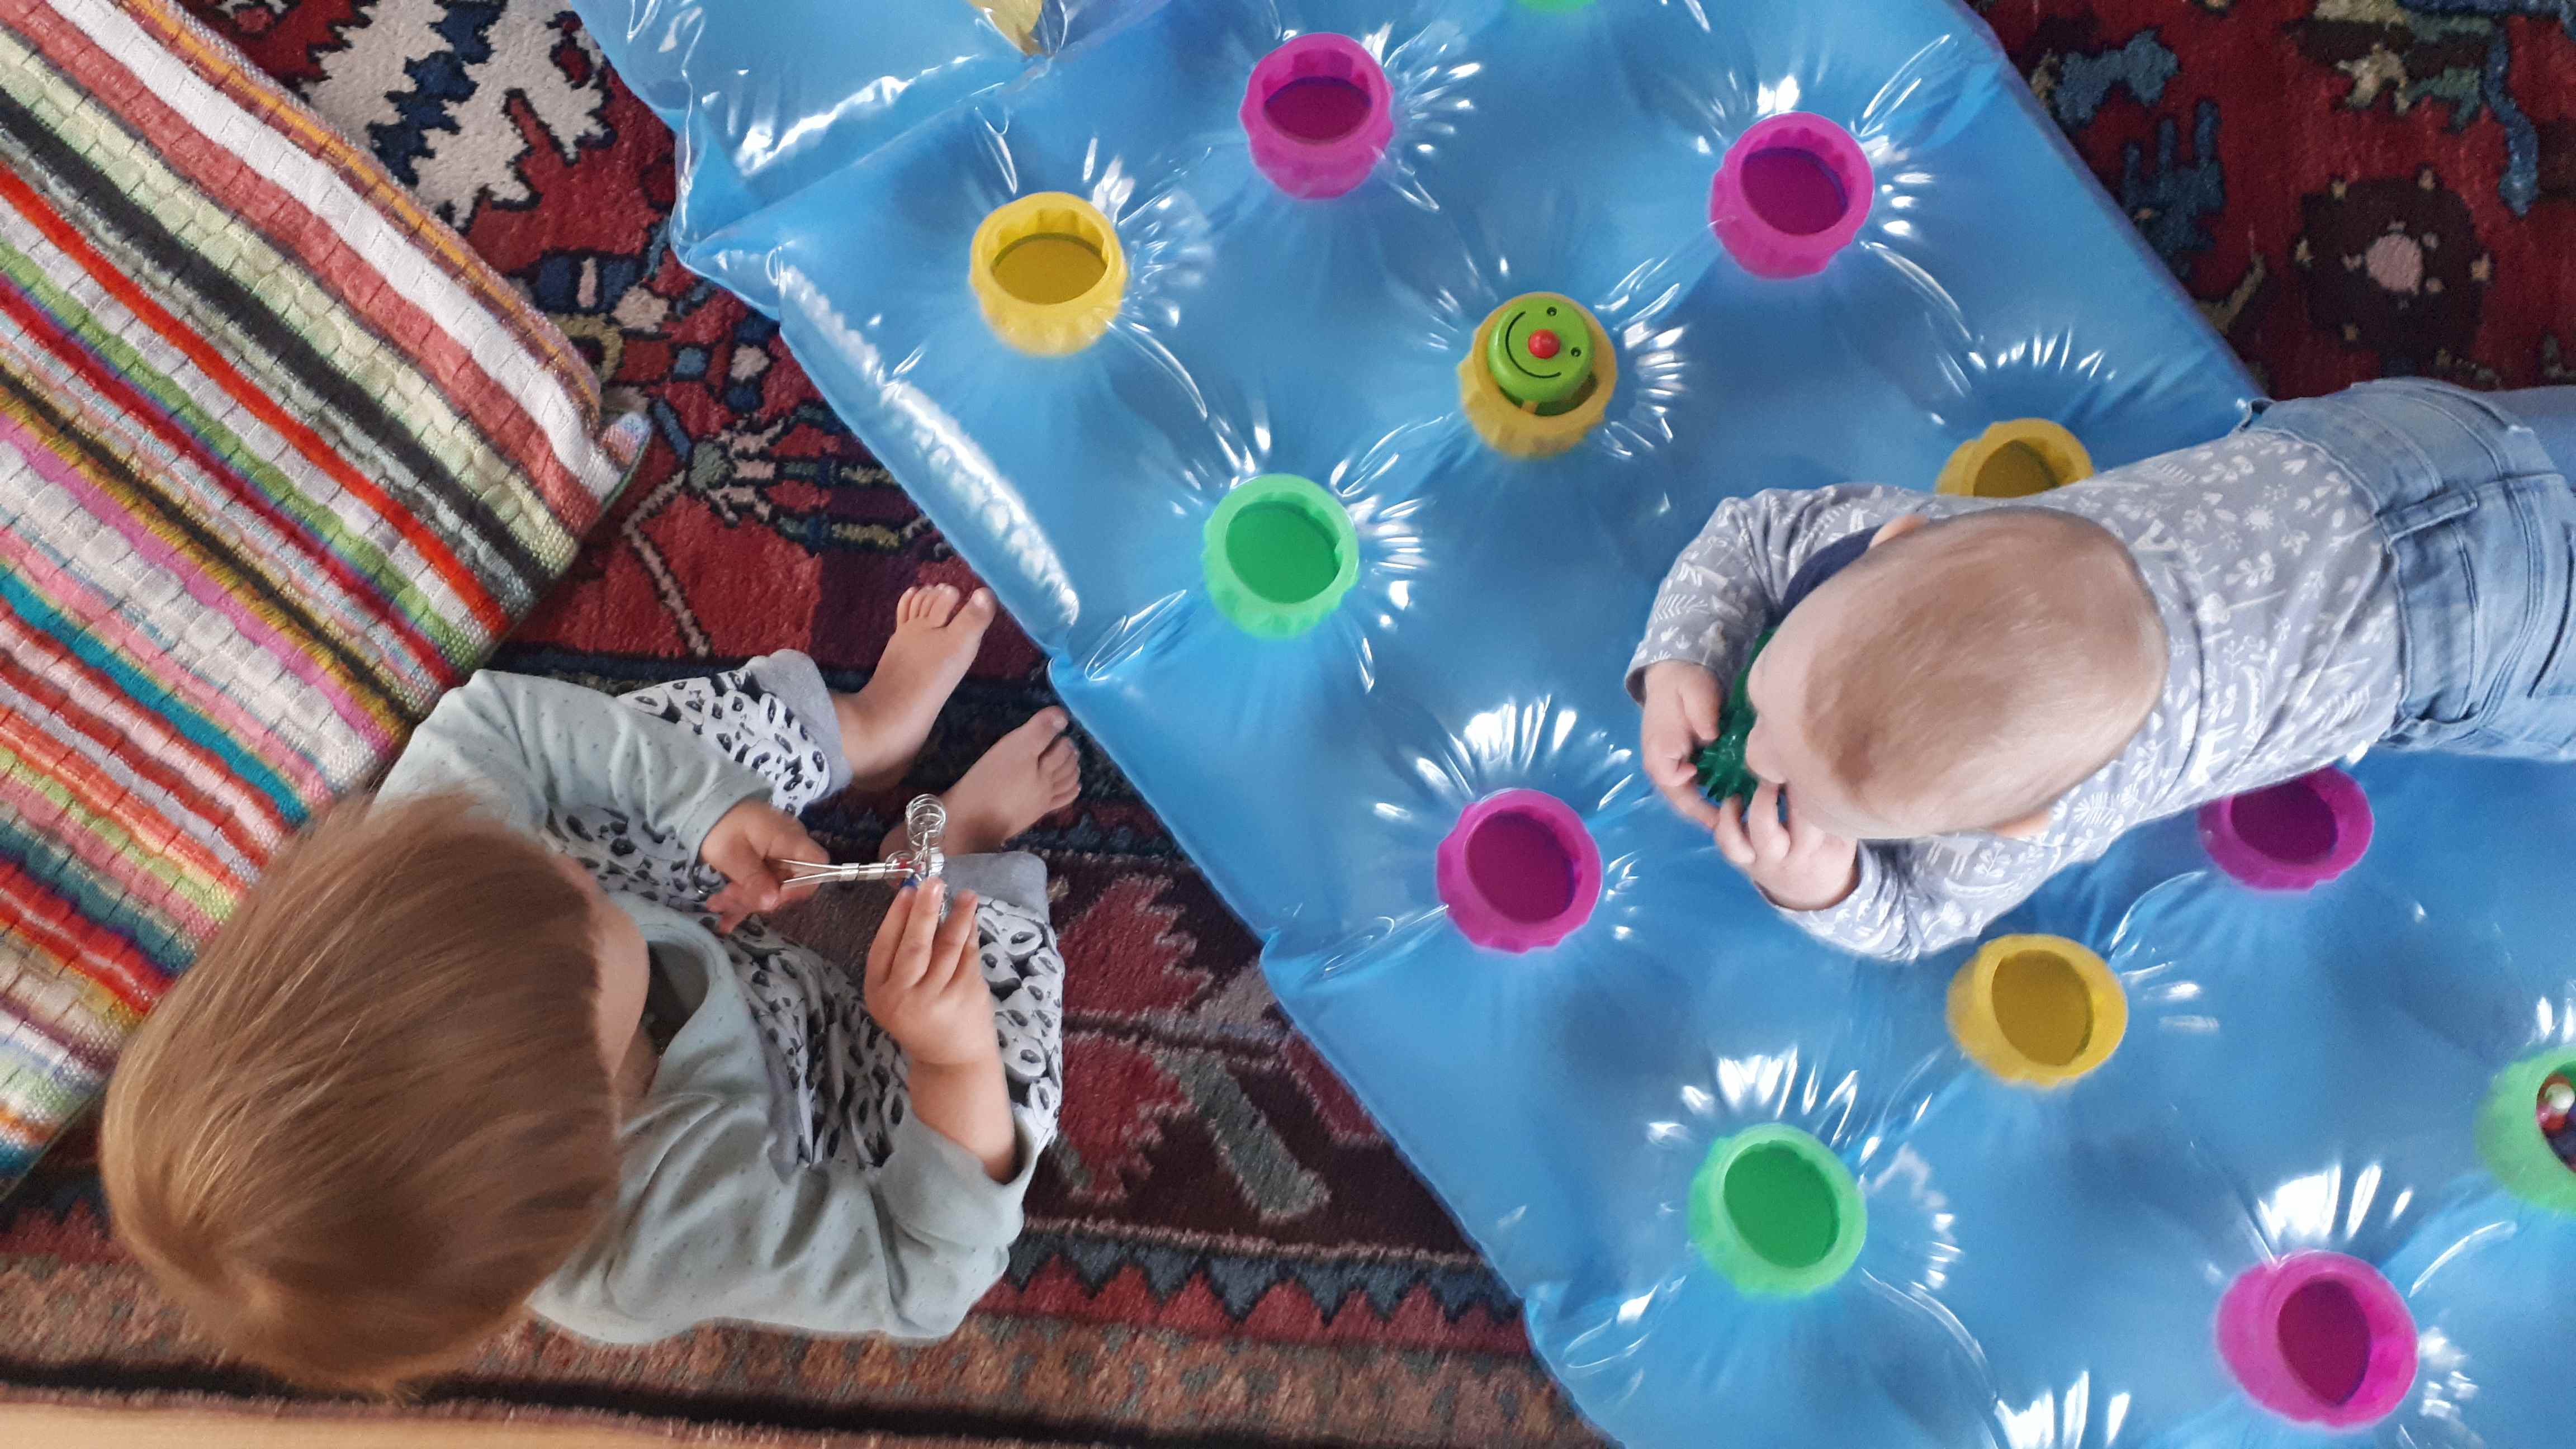 Bild aus der Krabbelgruppe mit 2 Kleinkindern auf einer Luftmatratze mit Spielzeug